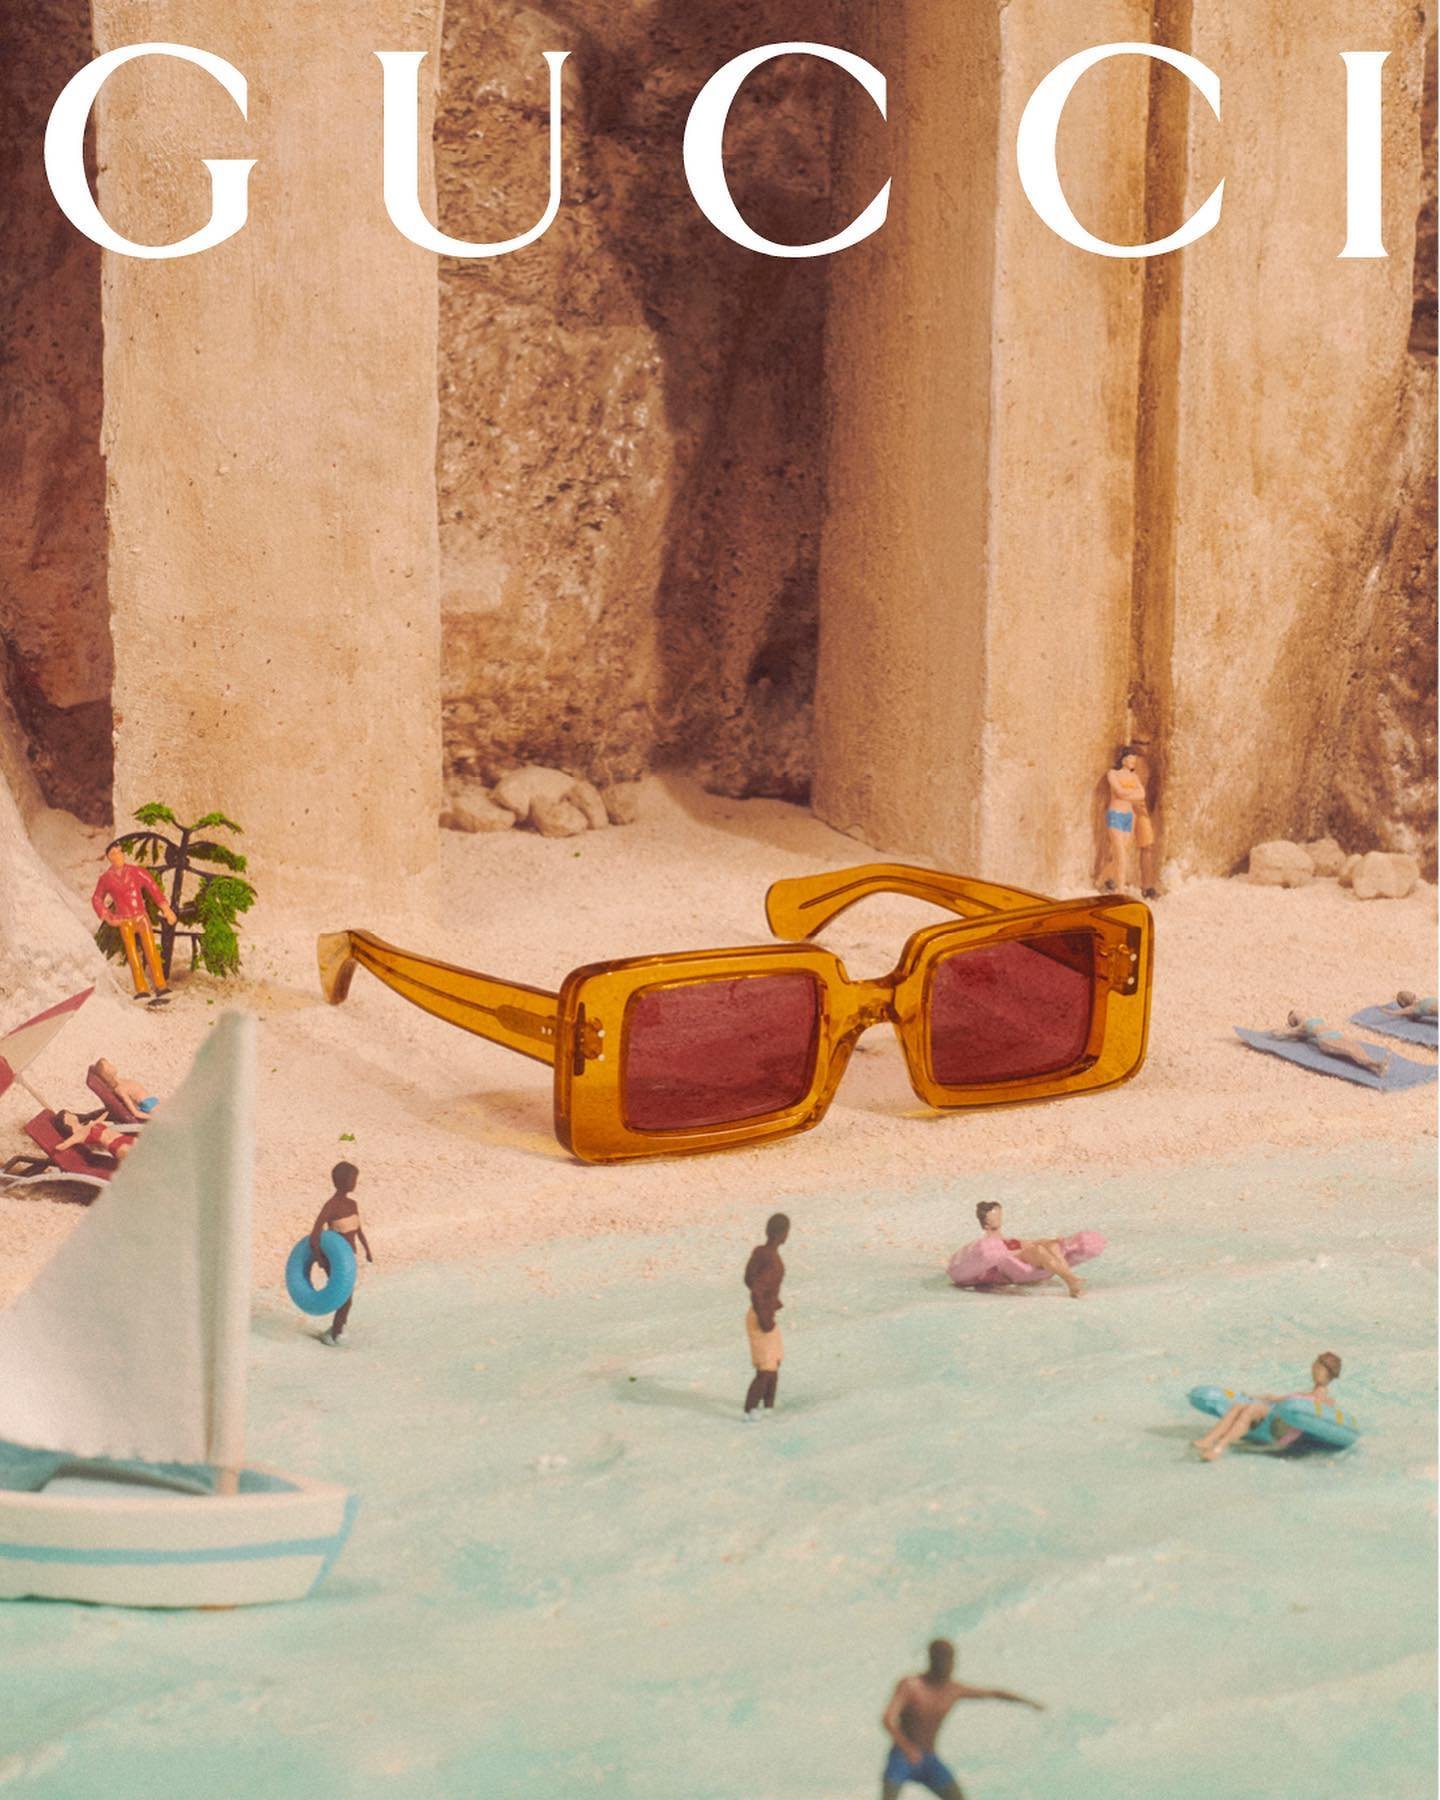 Gucci-Resort-2022-by-Max-Siedentopf (21).jpg